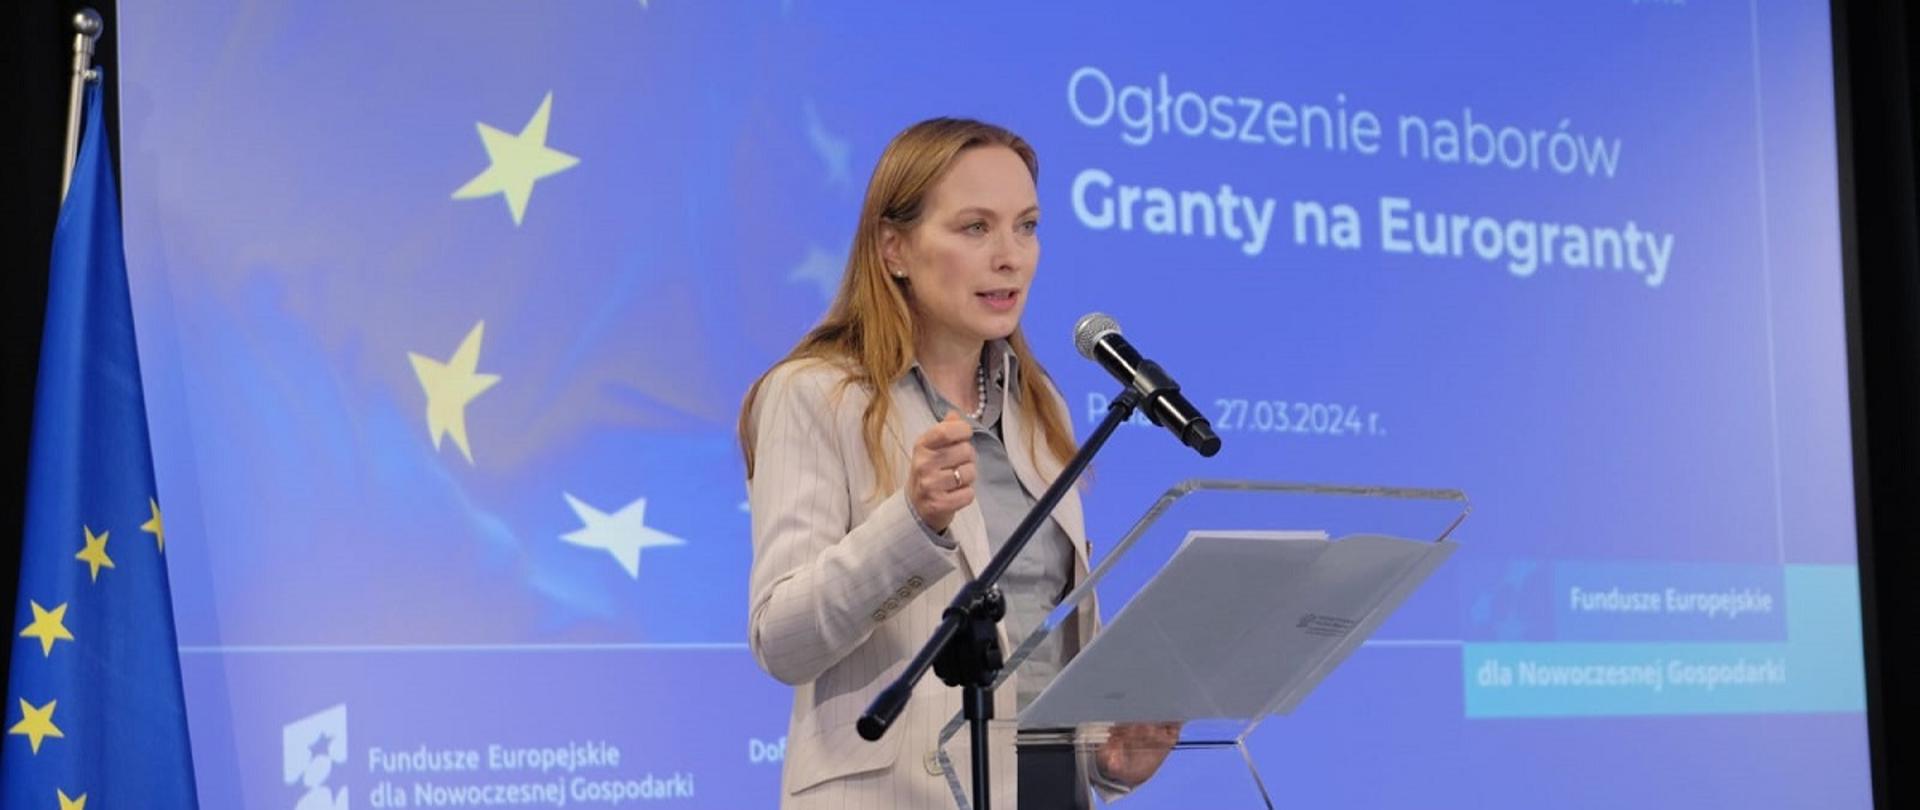 Minister funduszy i polityki regionalnej Katarzyna Pełczyńska-Nałęcz stoi przy pulpicie z mikrofonem, za jej plecami grafika z napisem informującym o naborach na Granty dla Eurograntów